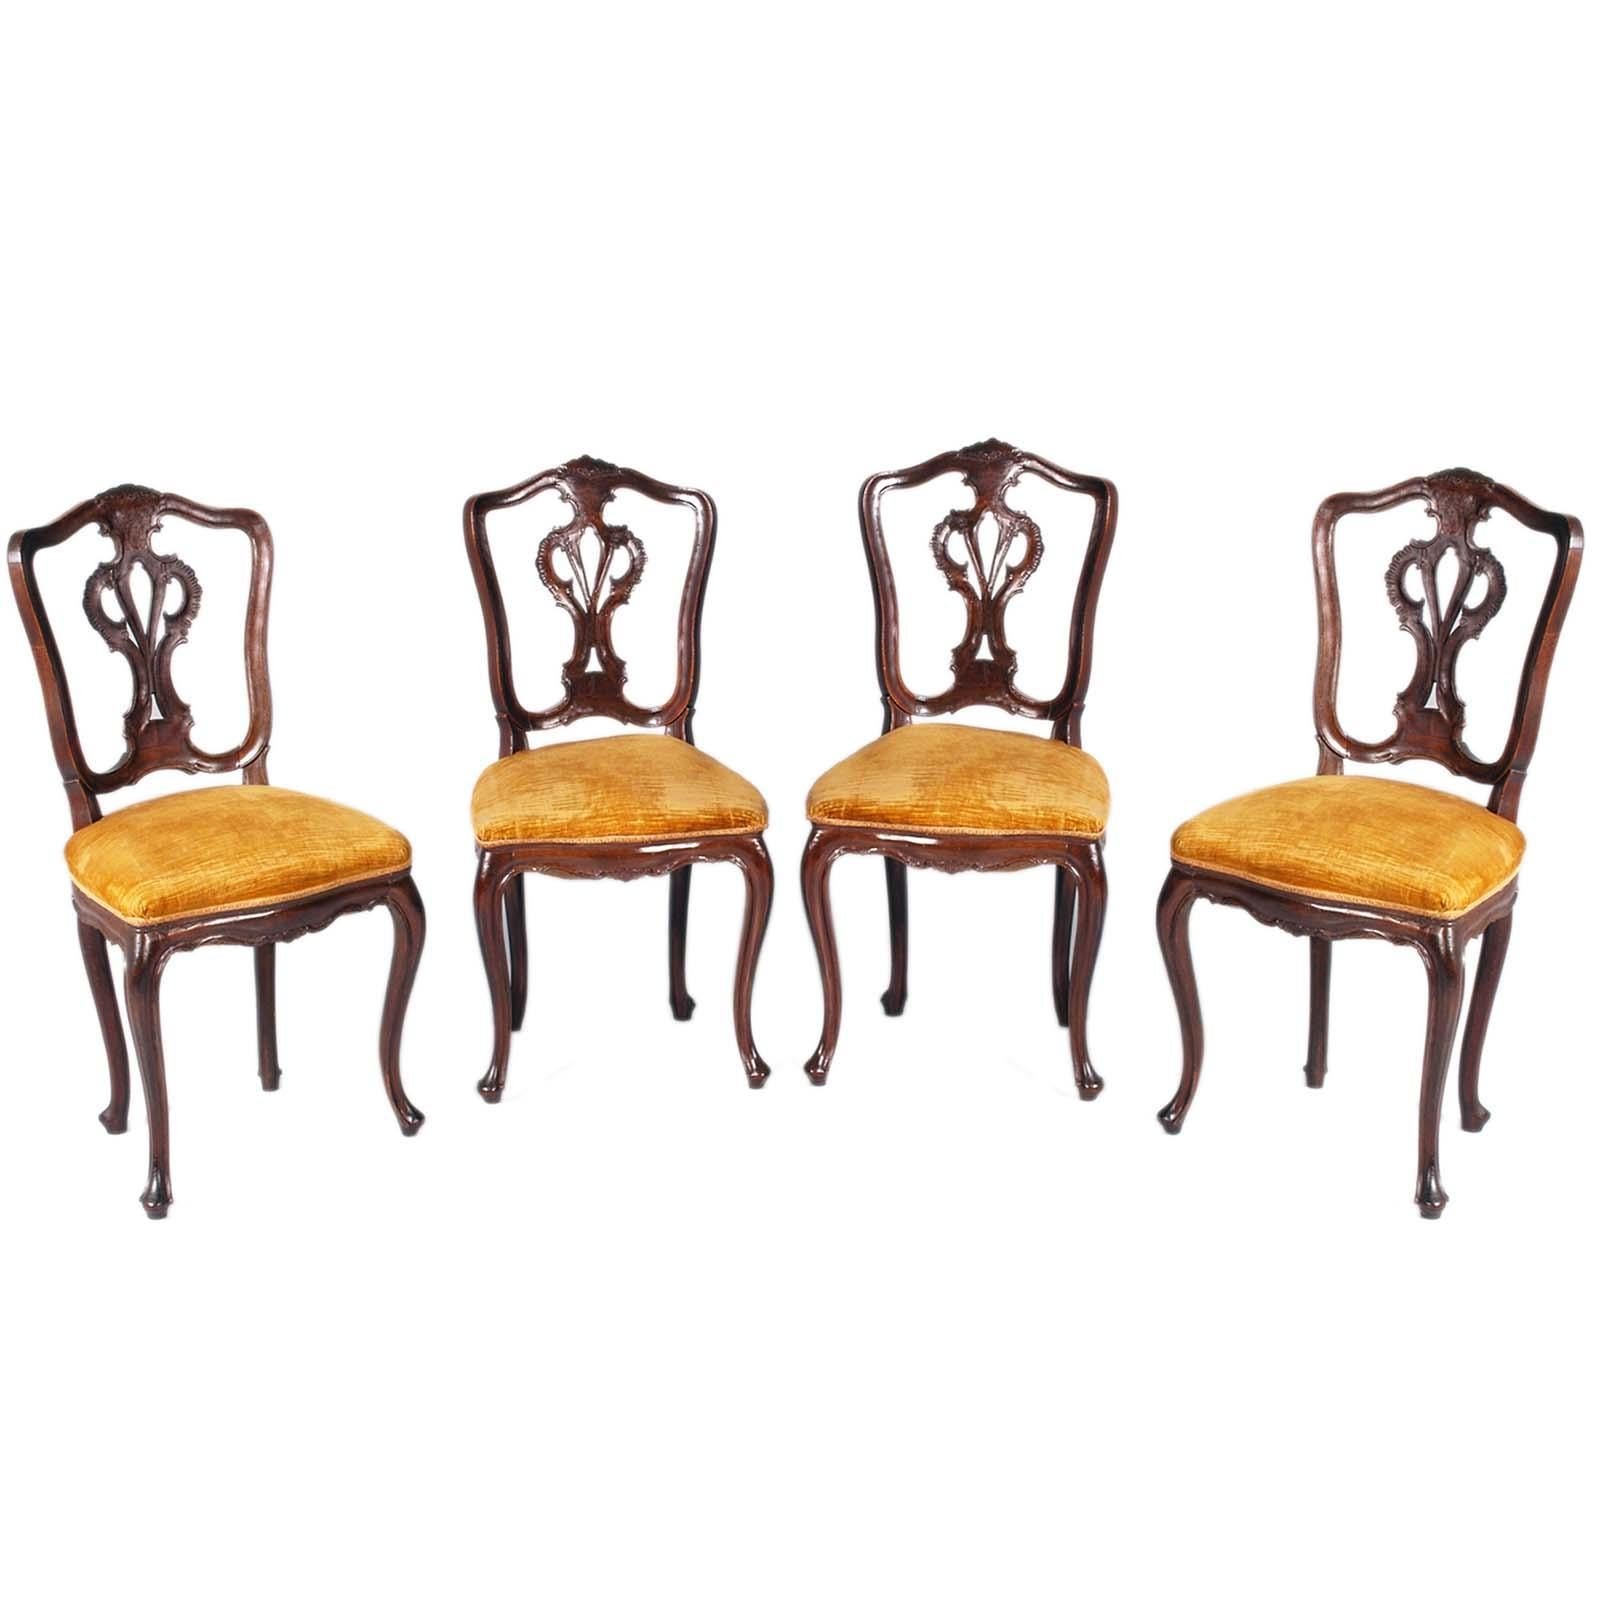 Raffiniertes Venedig Vier Louis XVI Stühle, 19. Jahrhundert, mit Samtpolsterung noch benutzbar, auf Wunsch neu polsterbar. Verstärkte Struktur für den täglichen Gebrauch. Federsitz. Schöne originale antike Patina
Das Design der Stühle kann der